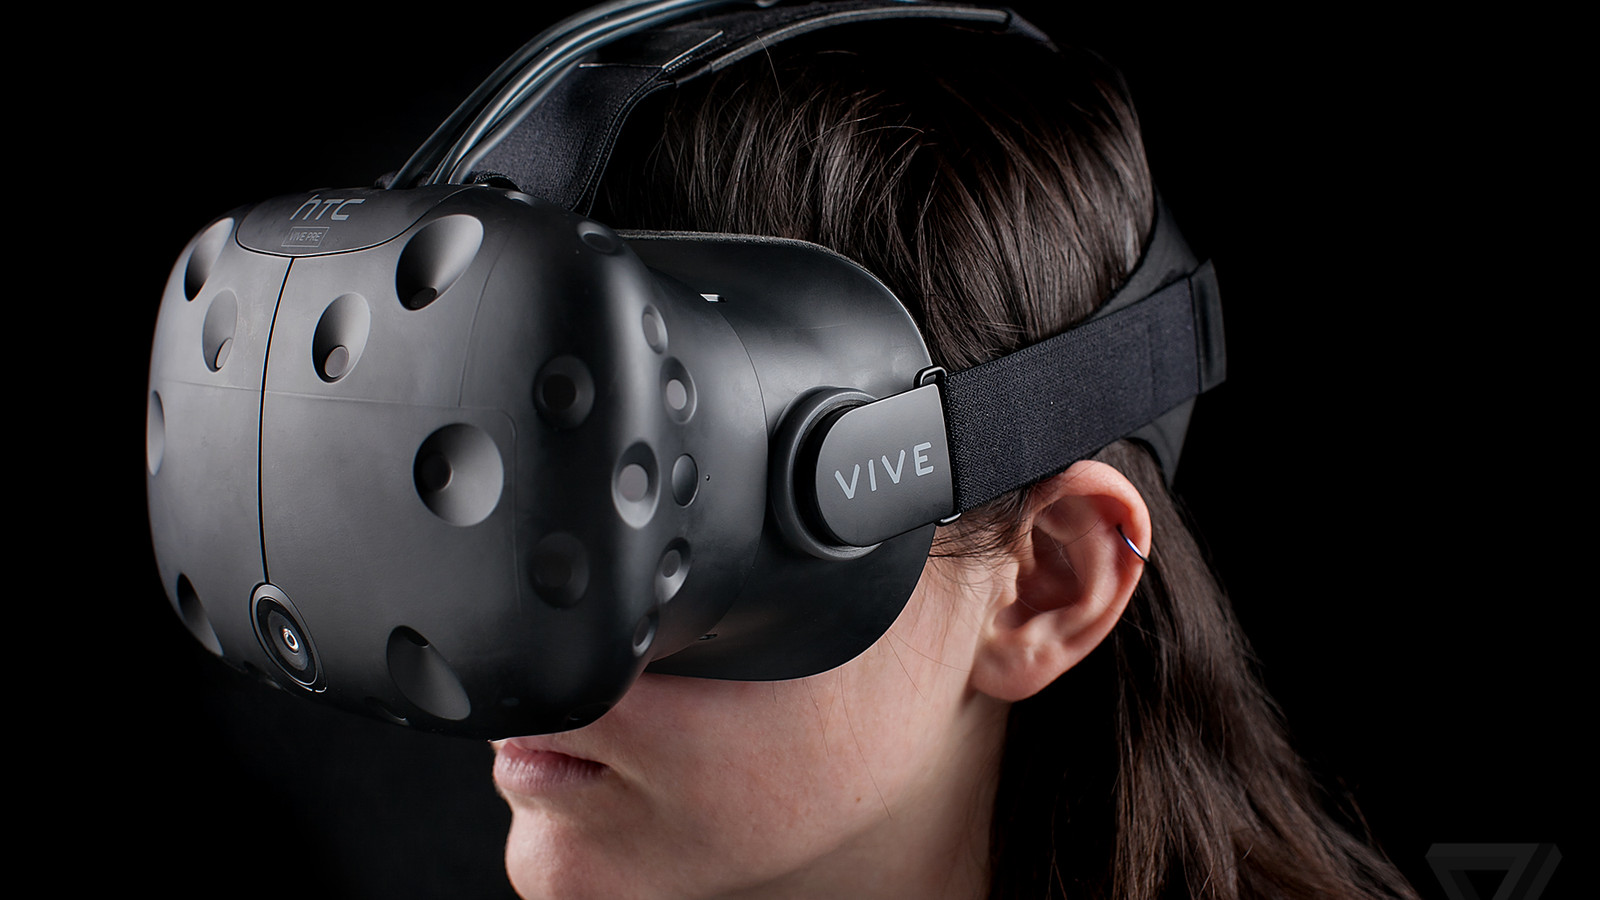 vr虚拟眼镜,带您领略身临其境的电影级虚拟现实